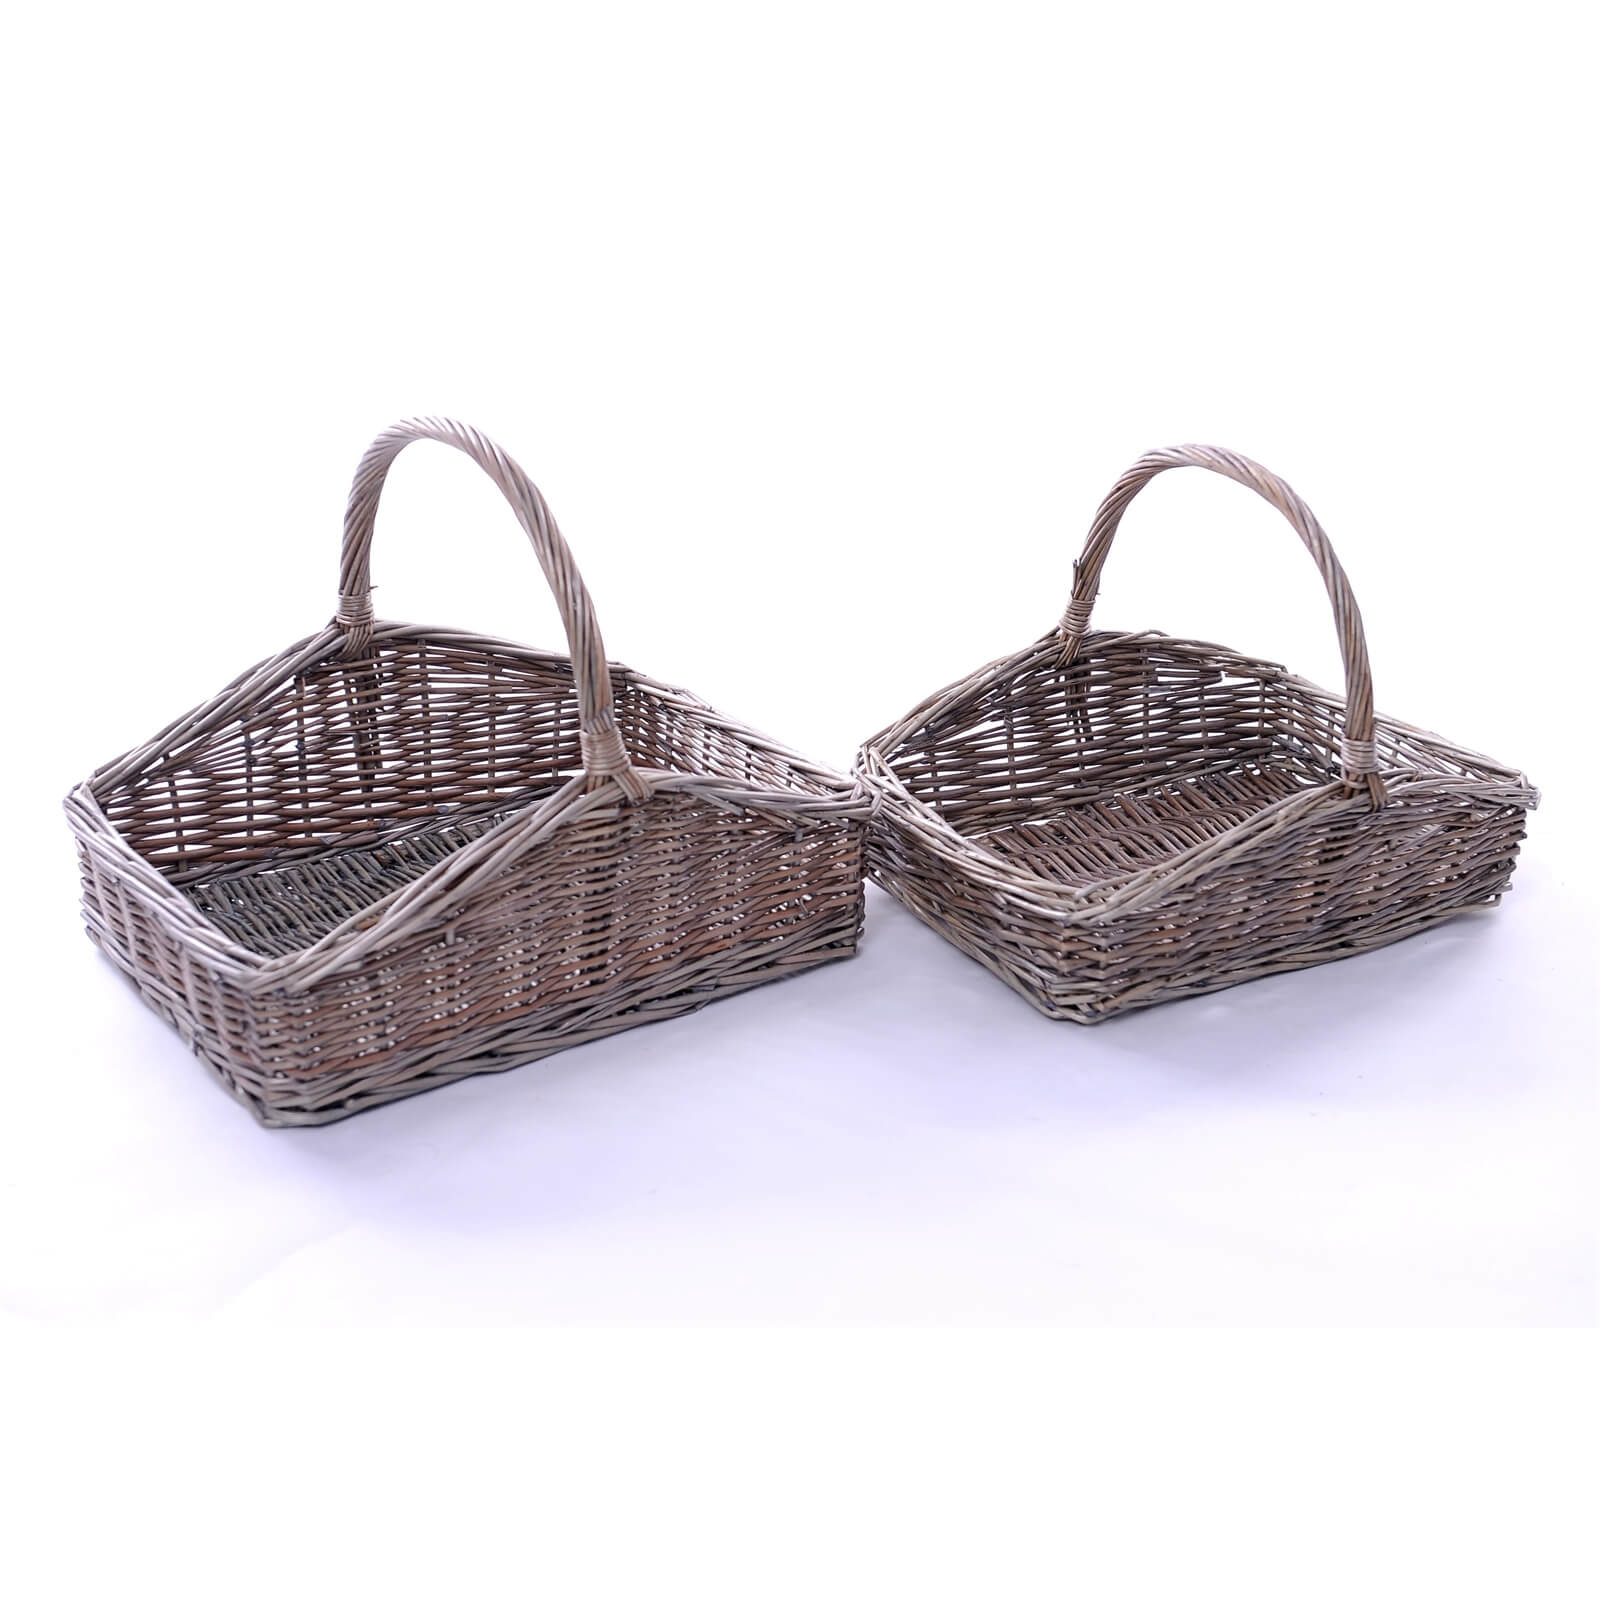 Set of 2 Wicker Gardeners' Baskets